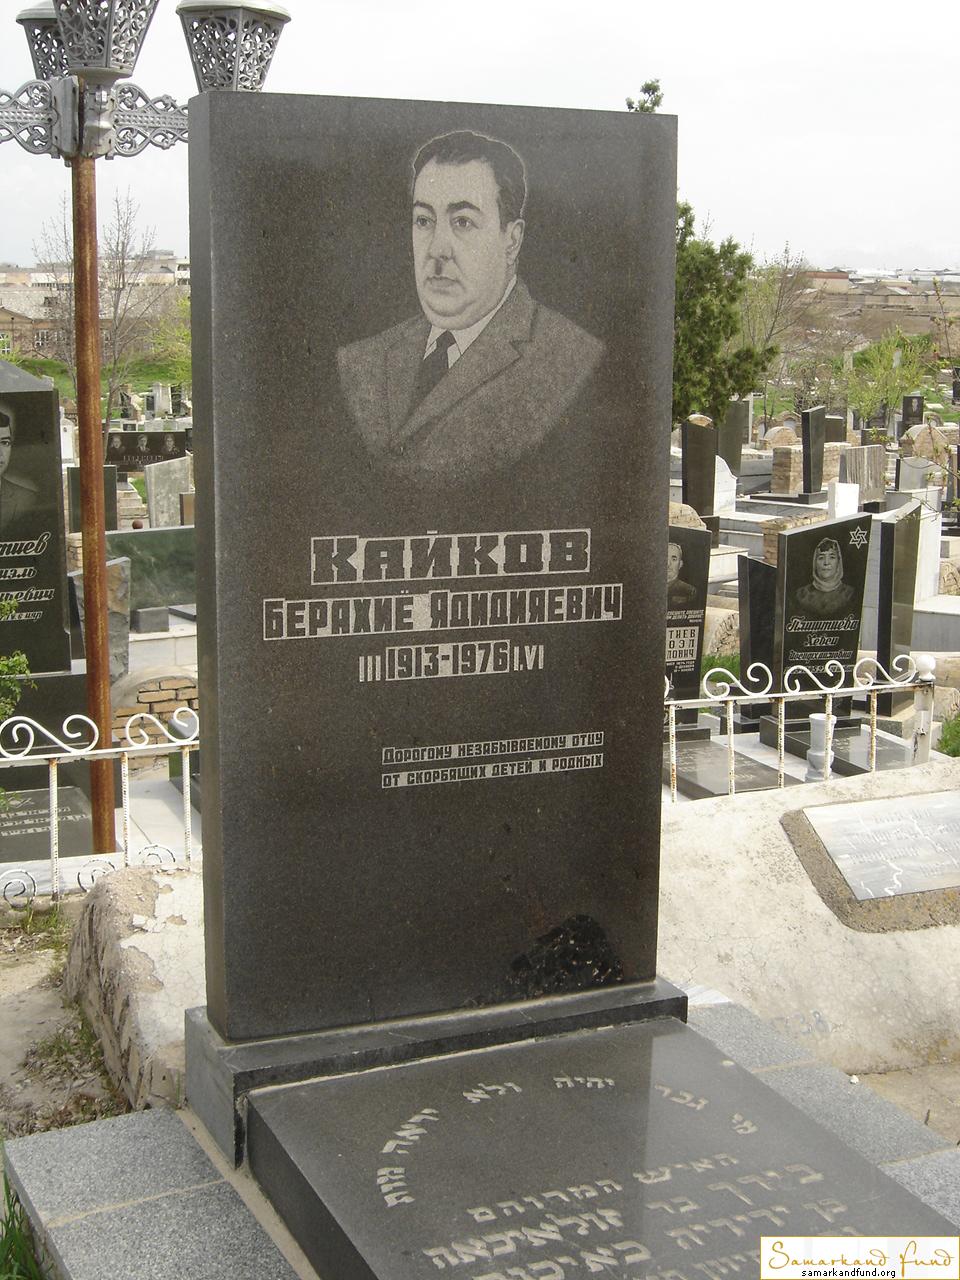 Кайков Берахие Ядидиявич  1913 - 1976 зах. 39.32  № 17.JPG